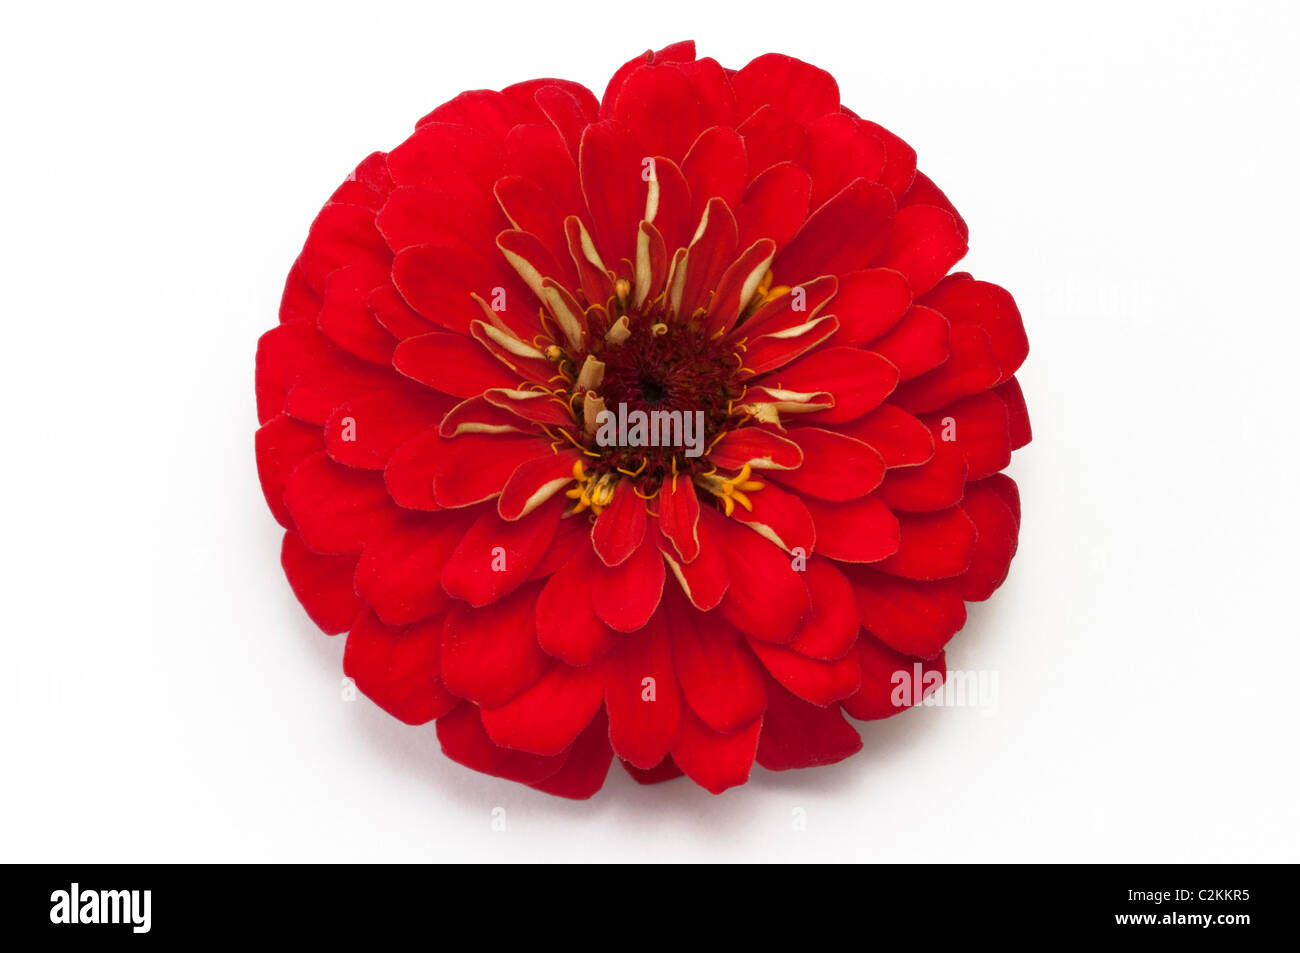 Zinnia, jeunes-et-old-age ( Zinnia x hybrida), fleur rouge. Studio photo sur un fond blanc. Banque D'Images